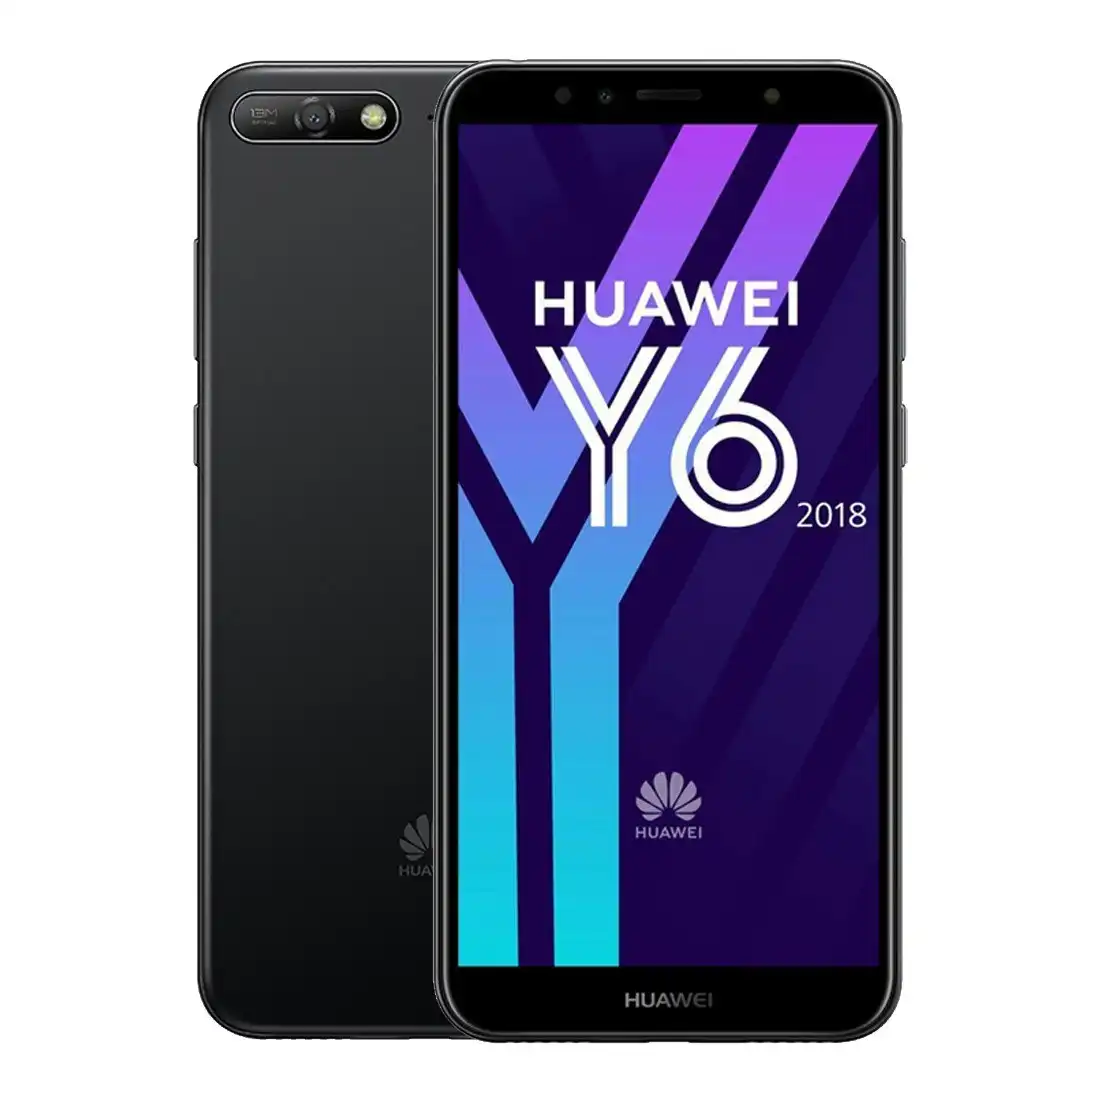 Huawei Y6 (16GB/2GB, Locked to Optus) Black [Refurbished] - Excellent